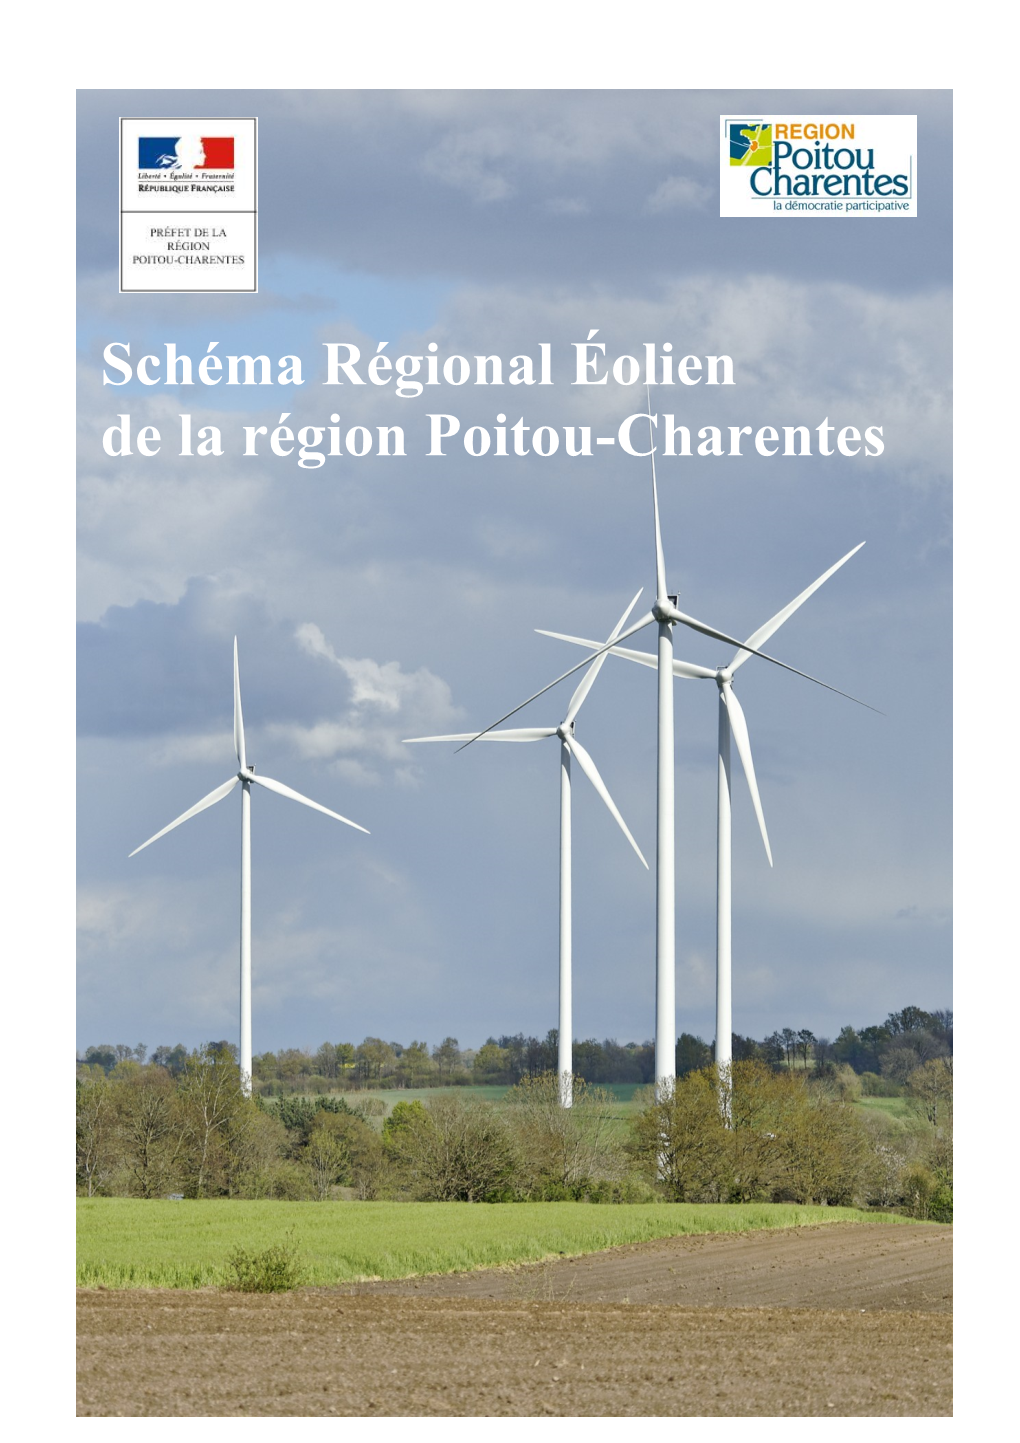 Schéma Régional Éolien De La Région Poitou-Charentes Schéma Régional Éolien Poitou-Charentes - Septembre 2012 2 Schéma Régional Éolien De La Région Poitou-Charentes